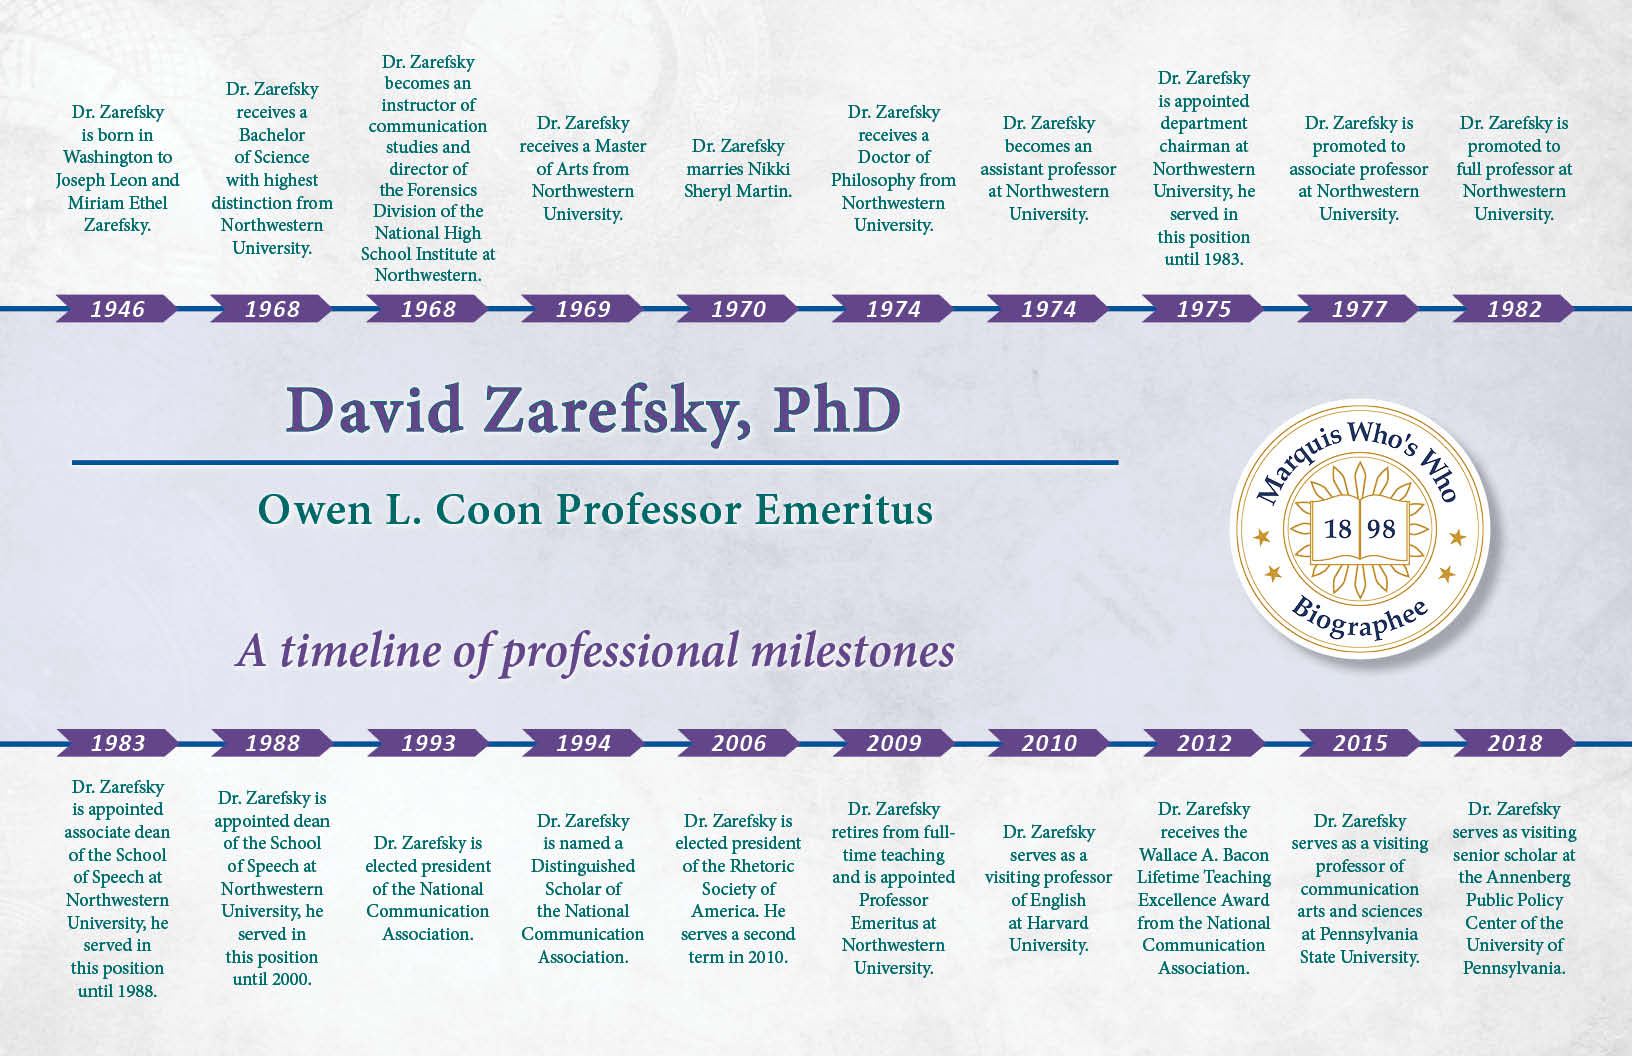 David Zarefsky Professional Milestones